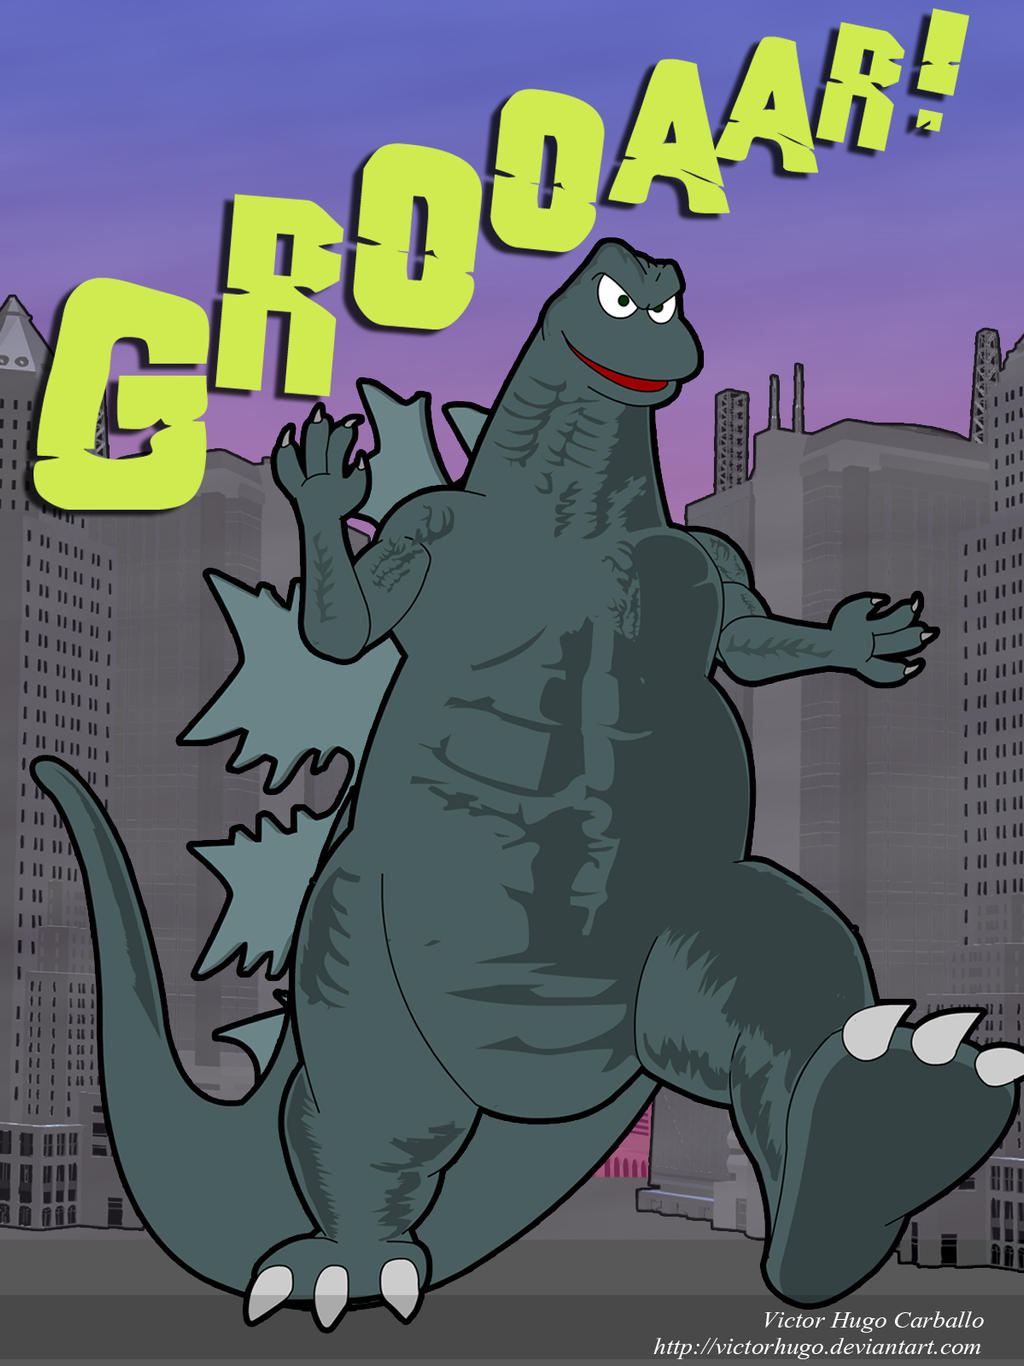 Go Go Godzilla!